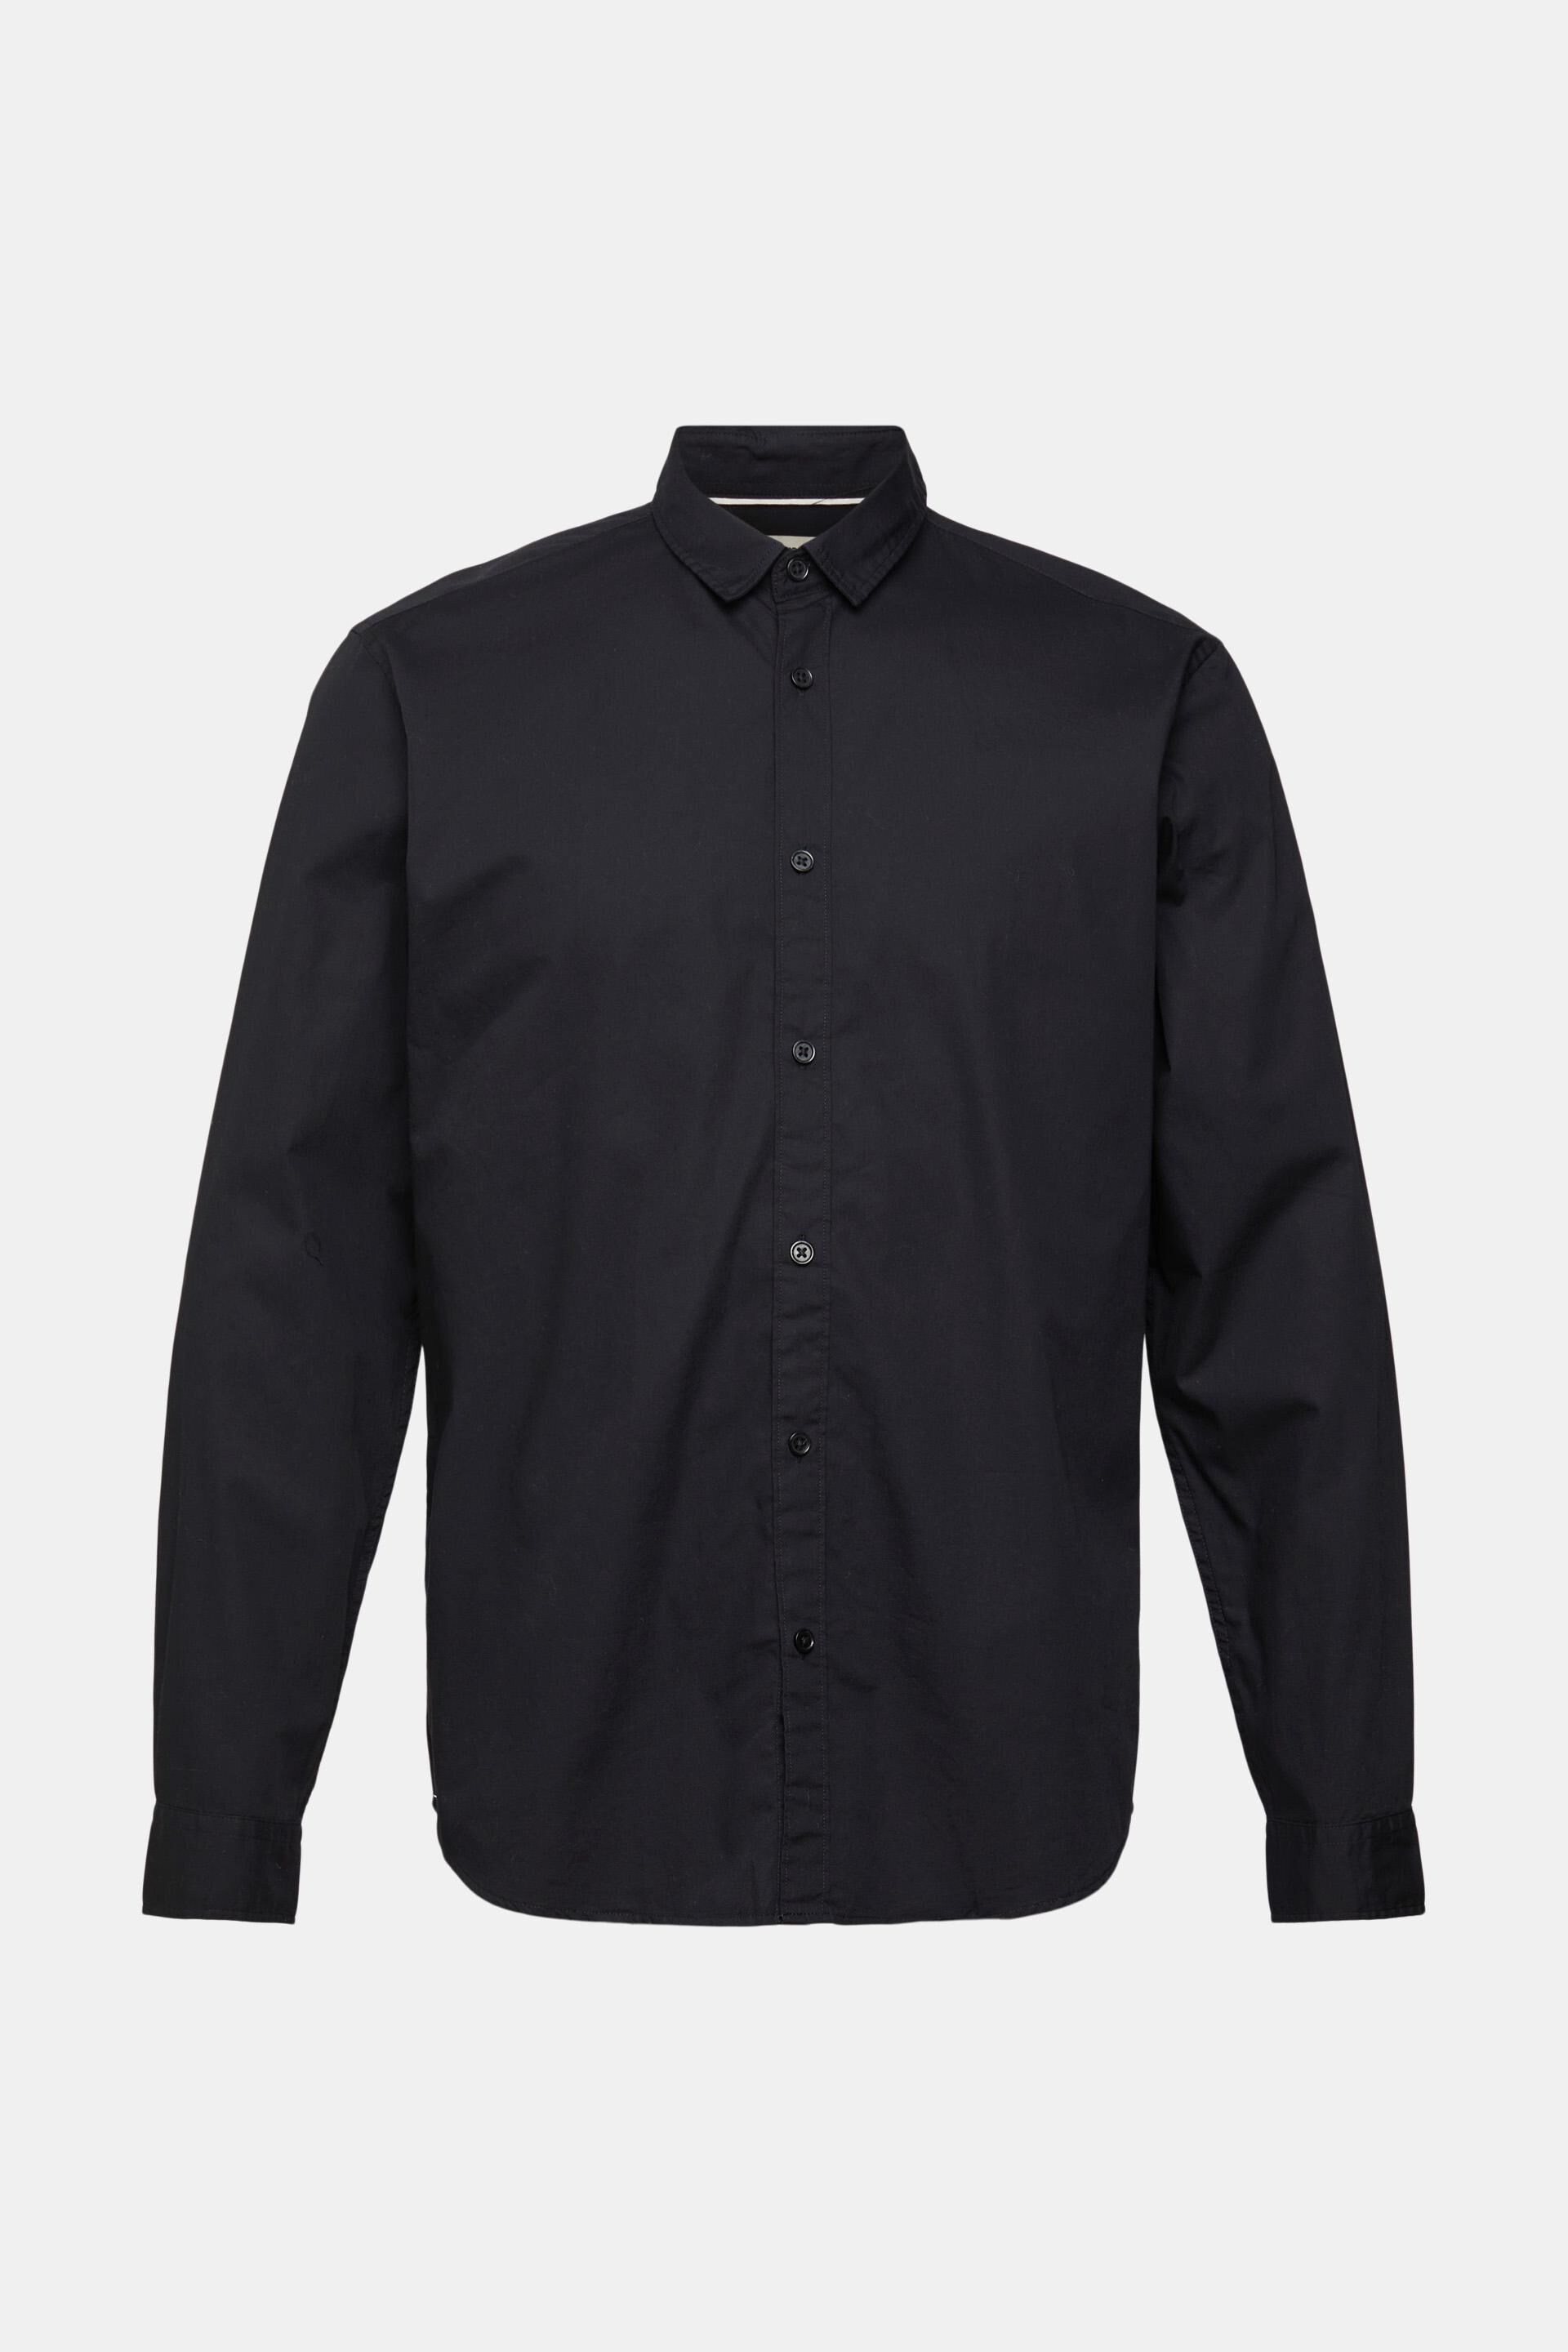 Waterafstotend in het Zwart voor heren Heren Kleding voor voor Overhemden voor Casual en nette overhemden Esprit Bodywarmer Met Opstaande Kraag 